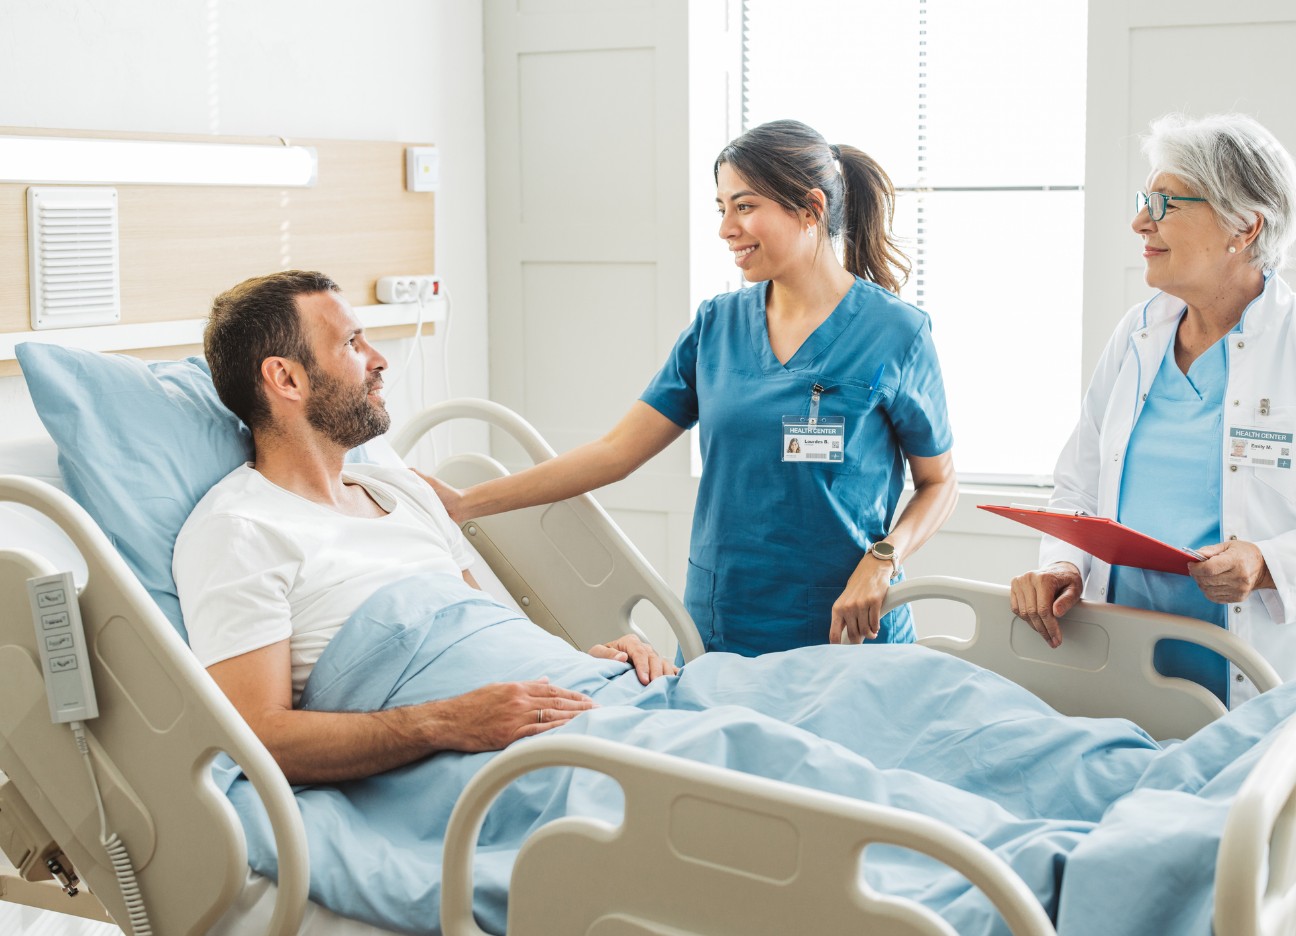 Eine junge Pflegerin und eine ältere Ärztin stehen gemeinsam an einem Patientenbett und unterhalten sich mit dem dort liegenden männlichen Patienten.